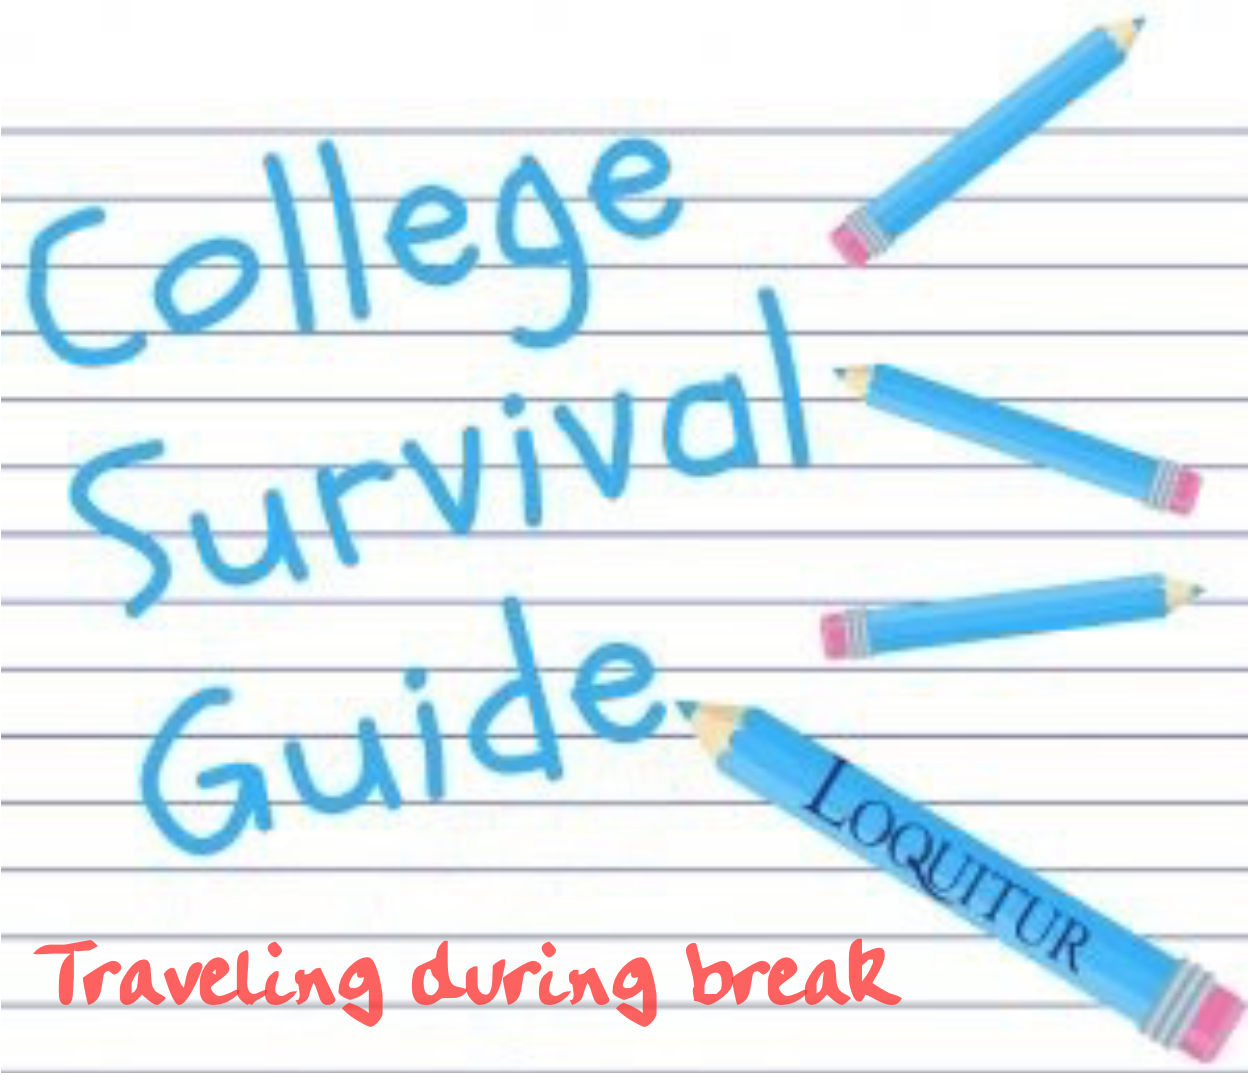 College Survival Guide